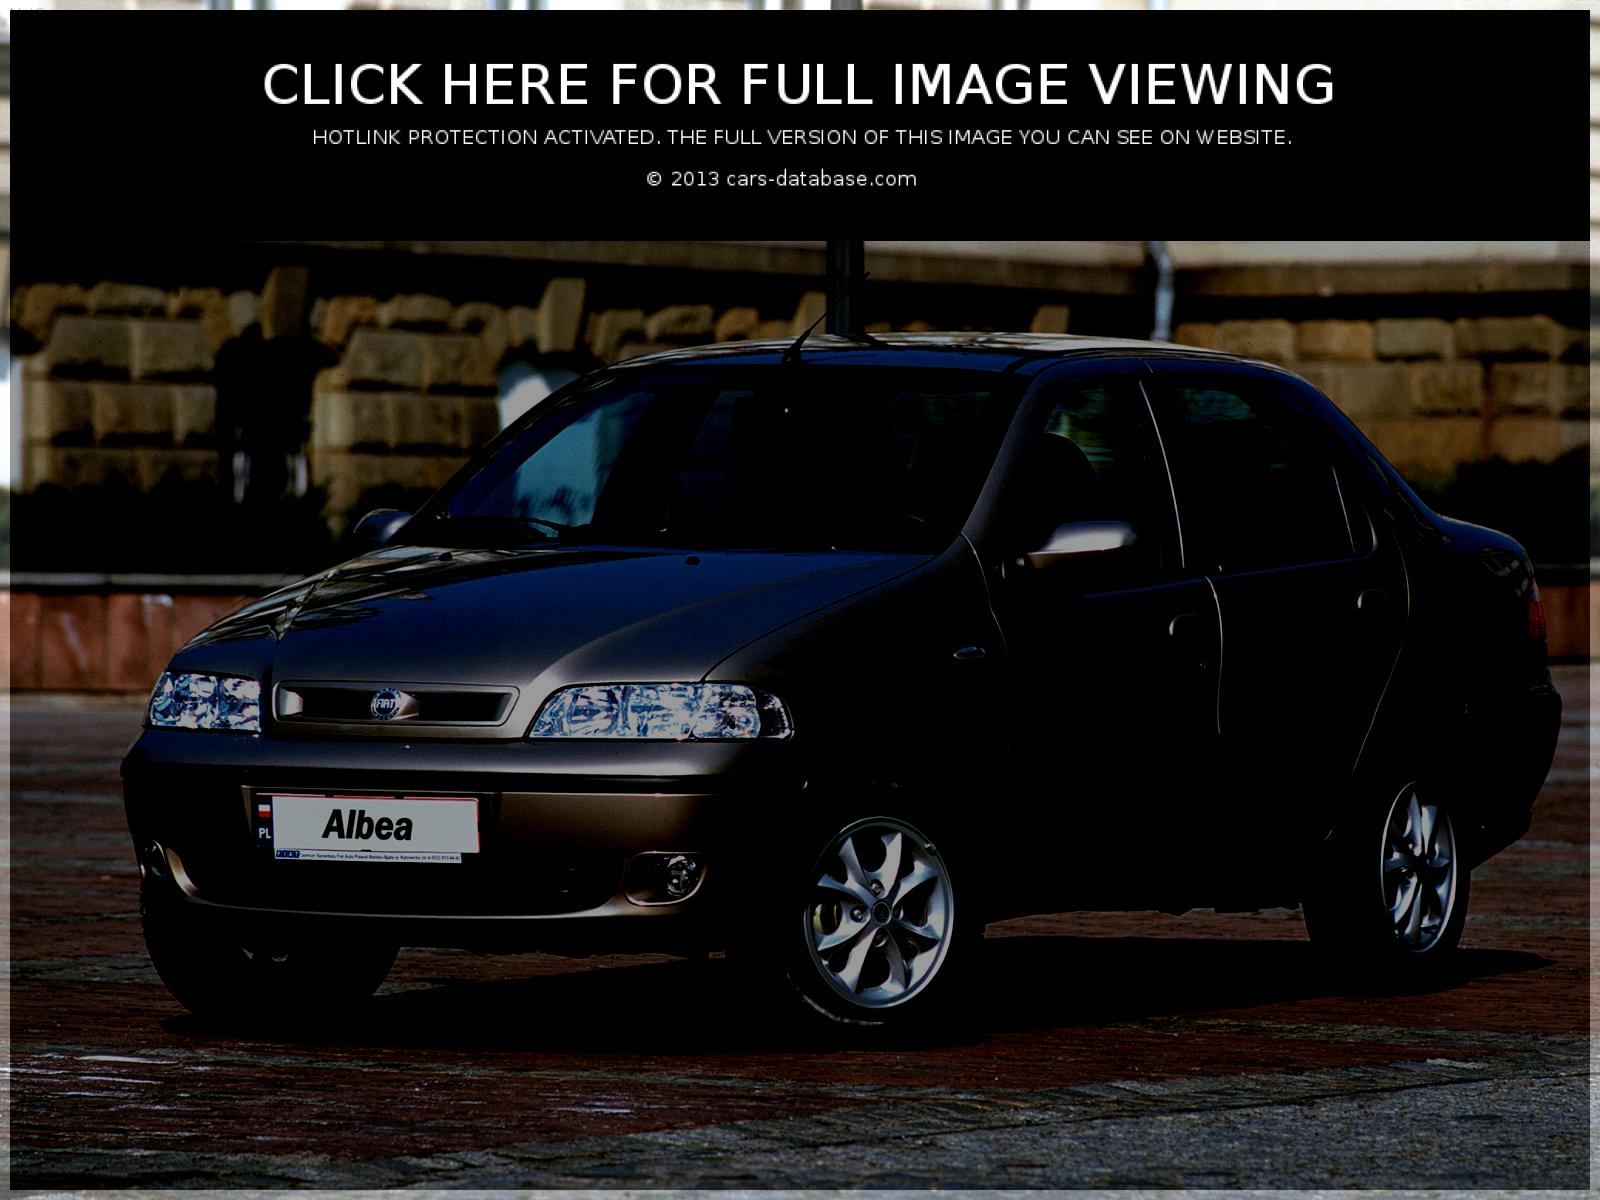 Fiat Albea: Informations sur le modèle, galerie d'images et complète...